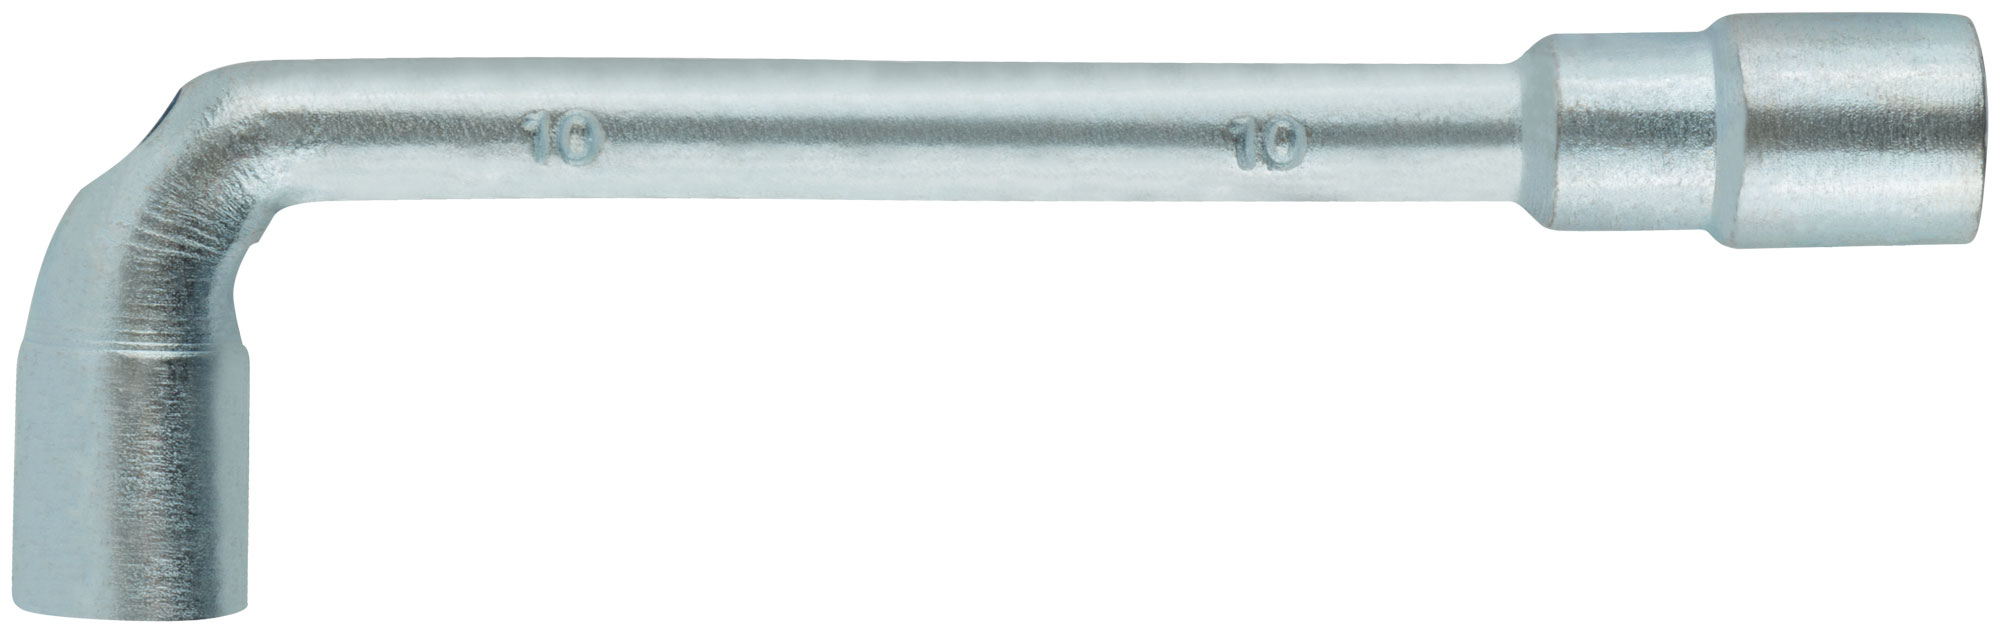 Ключ L-образный  10 мм